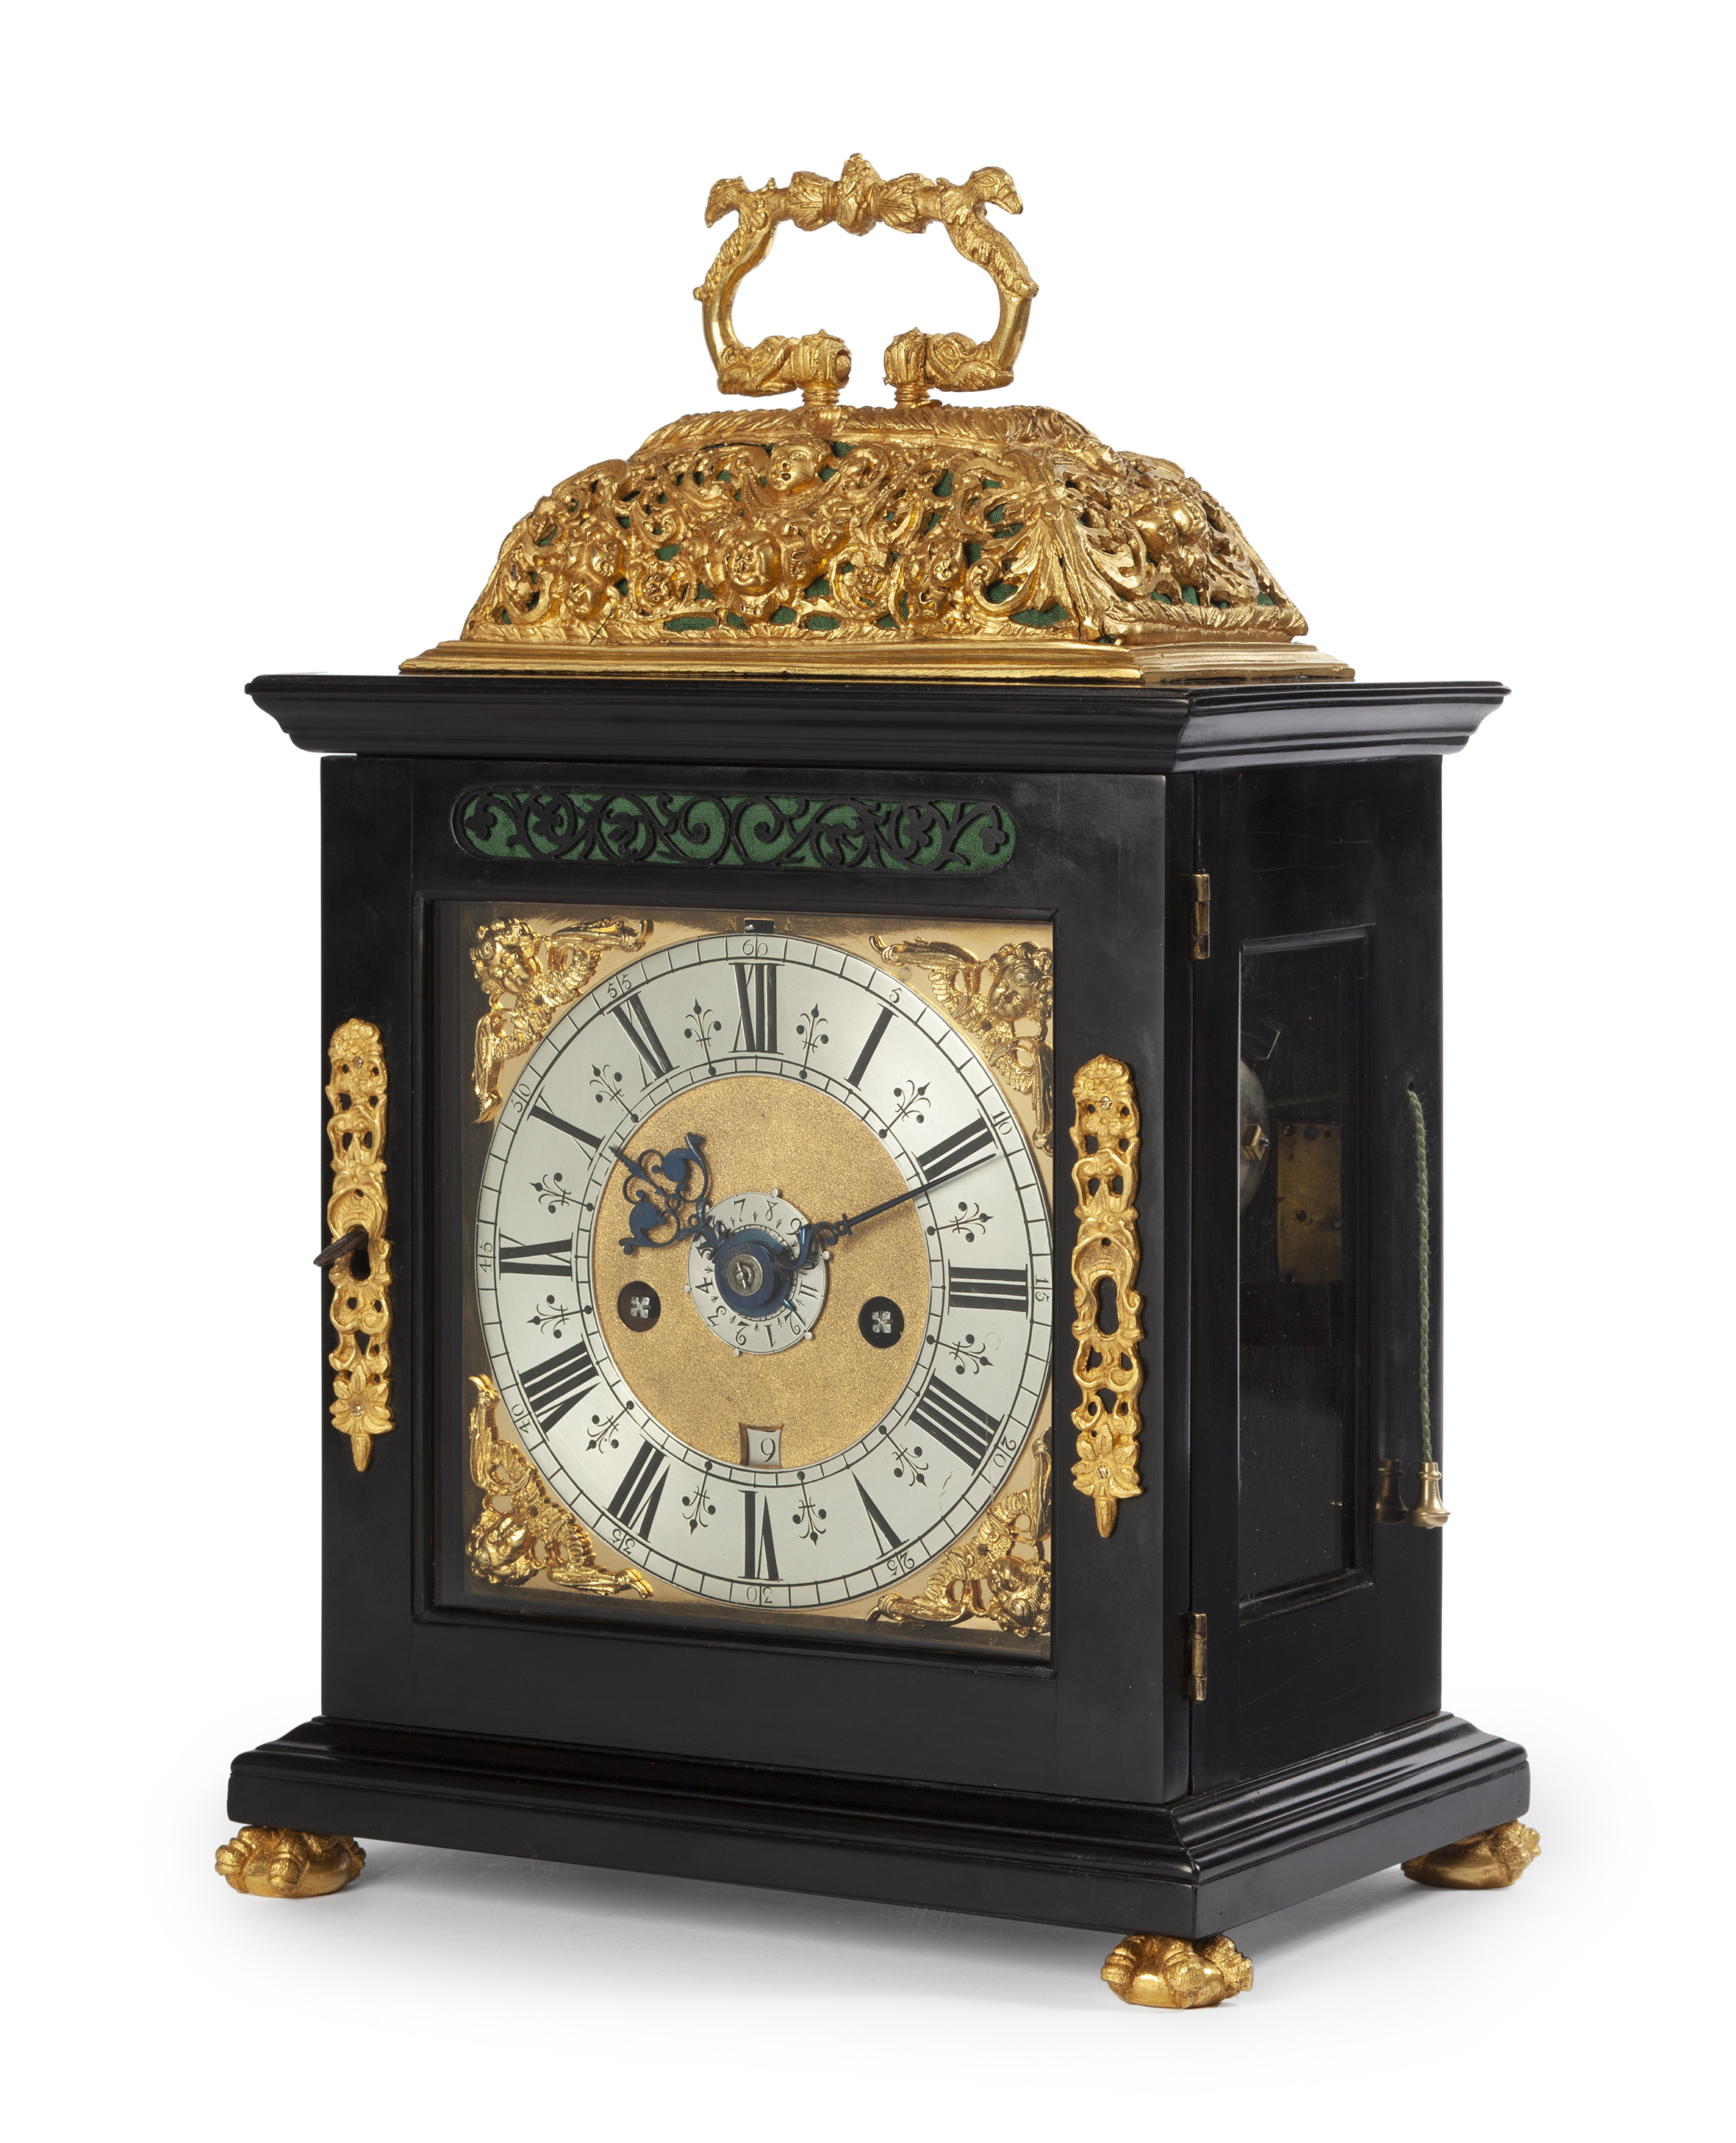 met de klok mee injecteren beha TAFELKLOK Gesigneerd: Nauta - Norris antieke klok antique clock